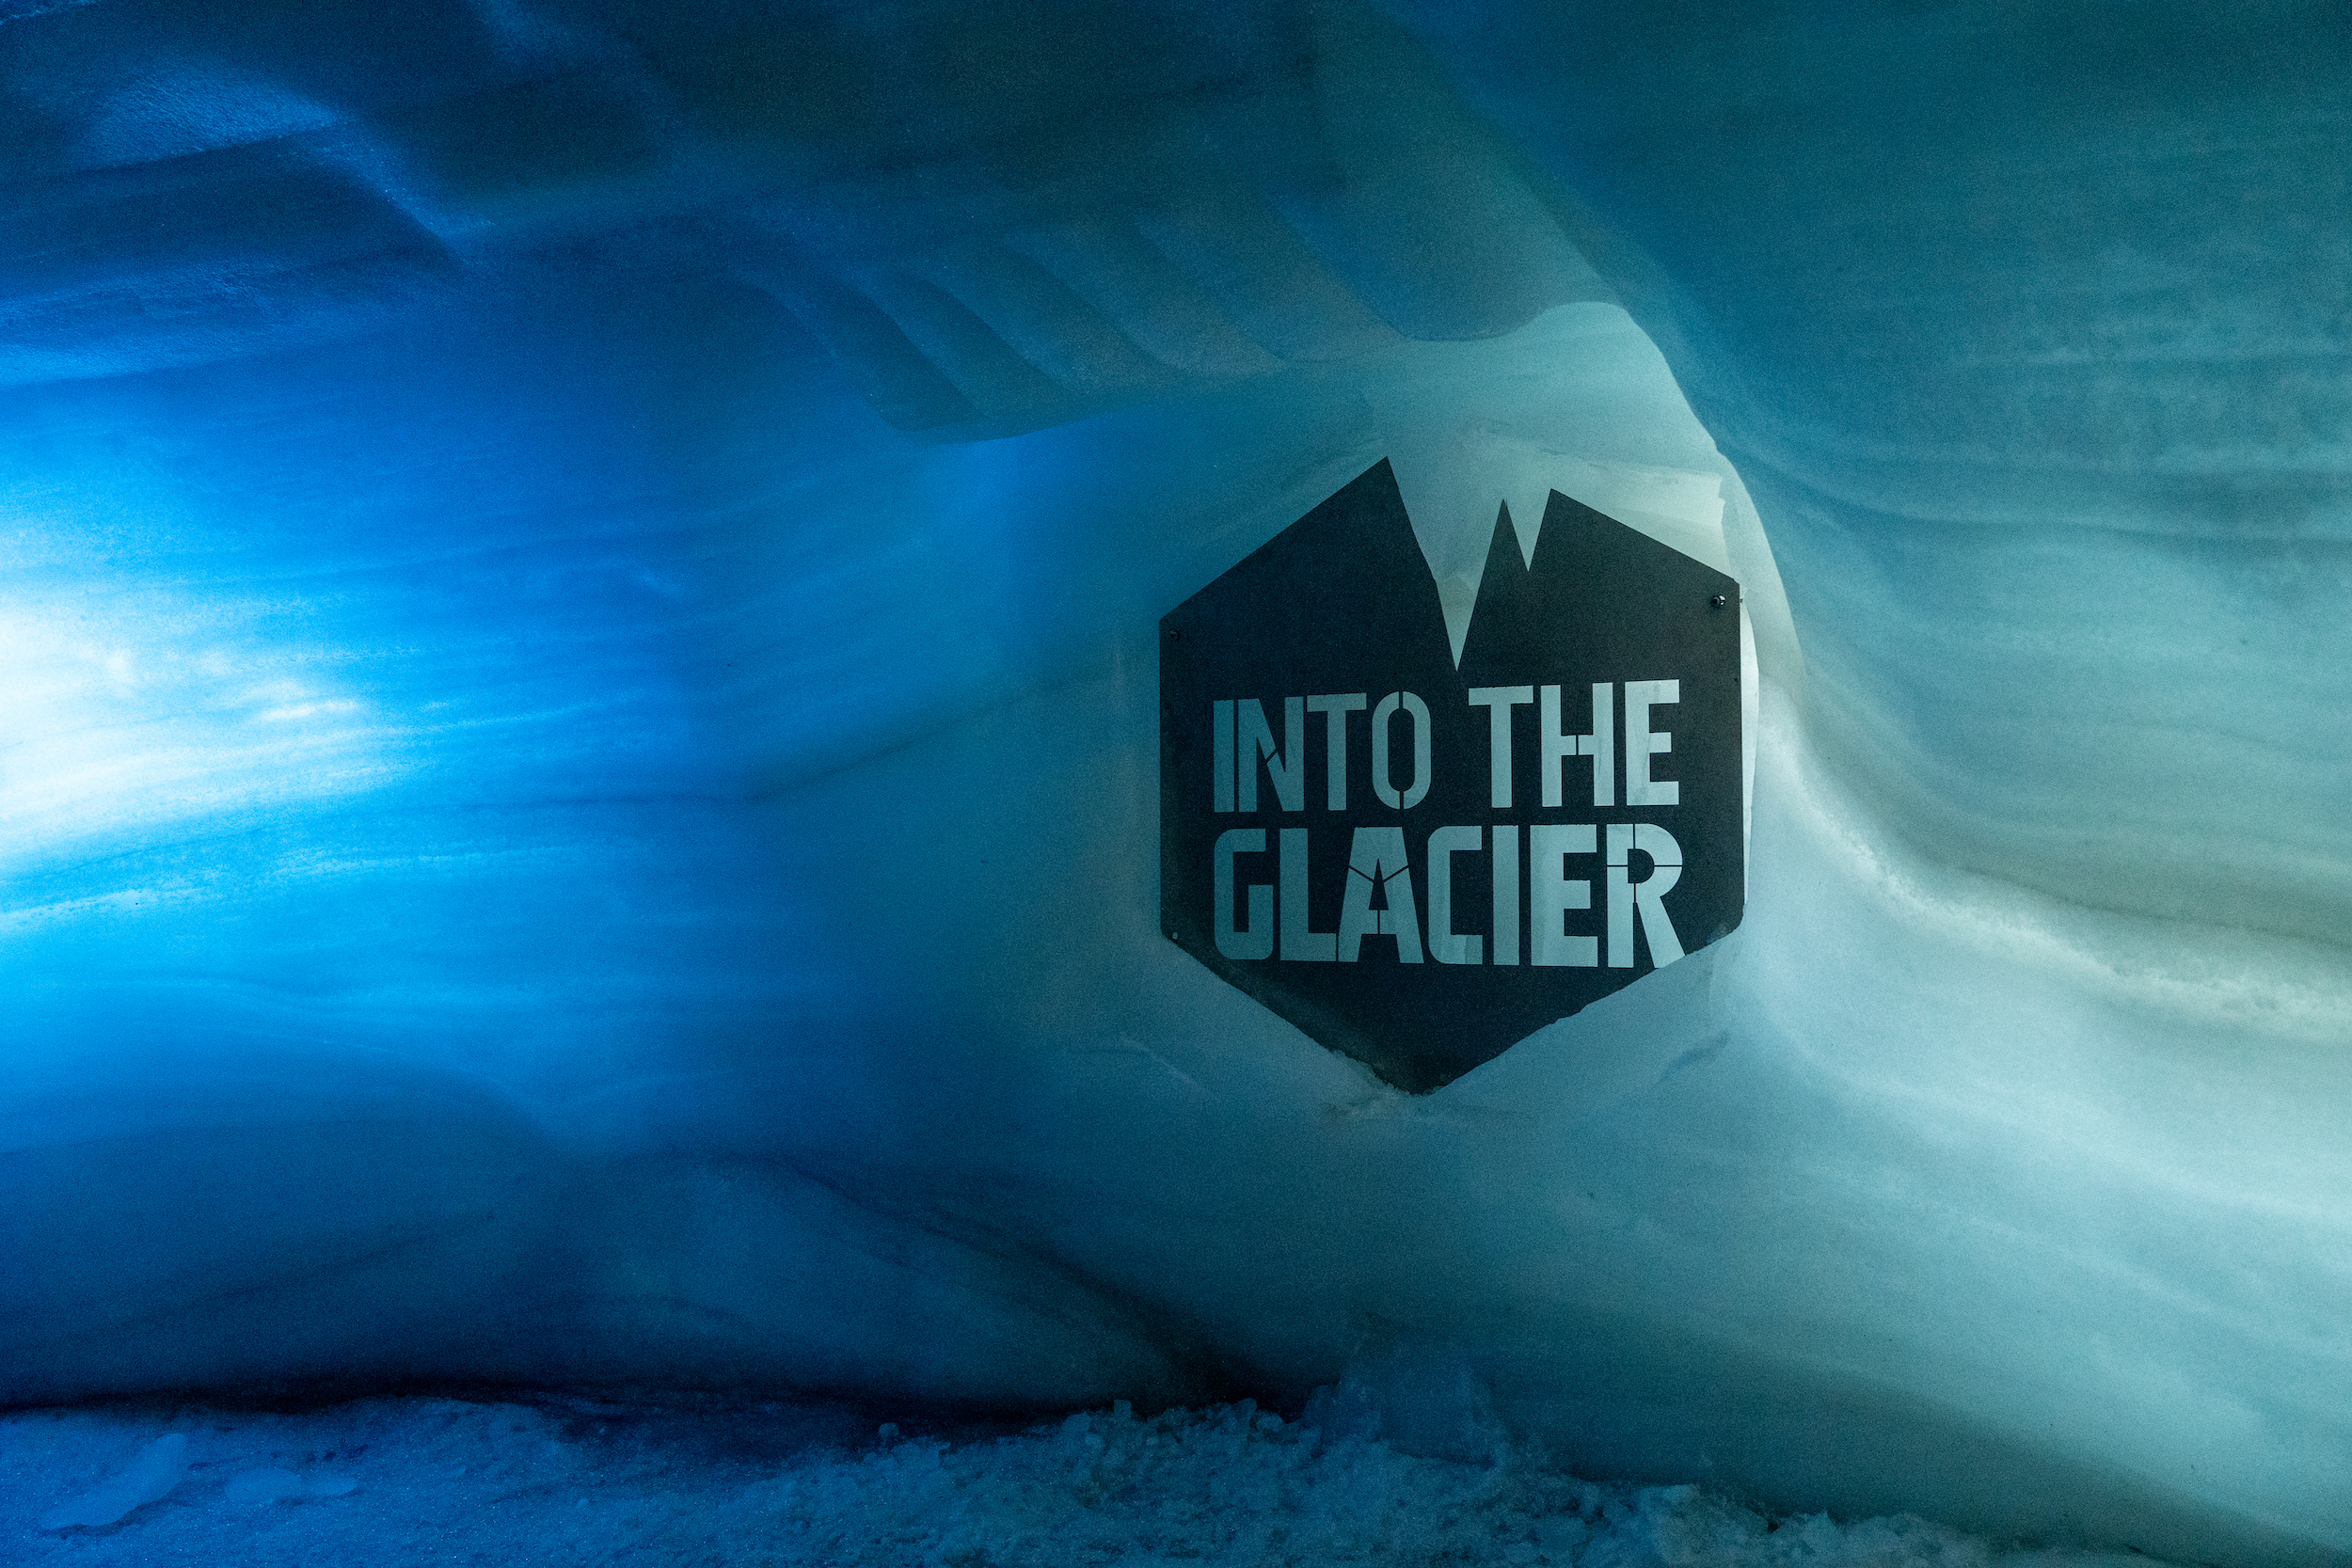 Die 'Into the Glacier'-Tour führt euch in das Herz eines echten Gletschers